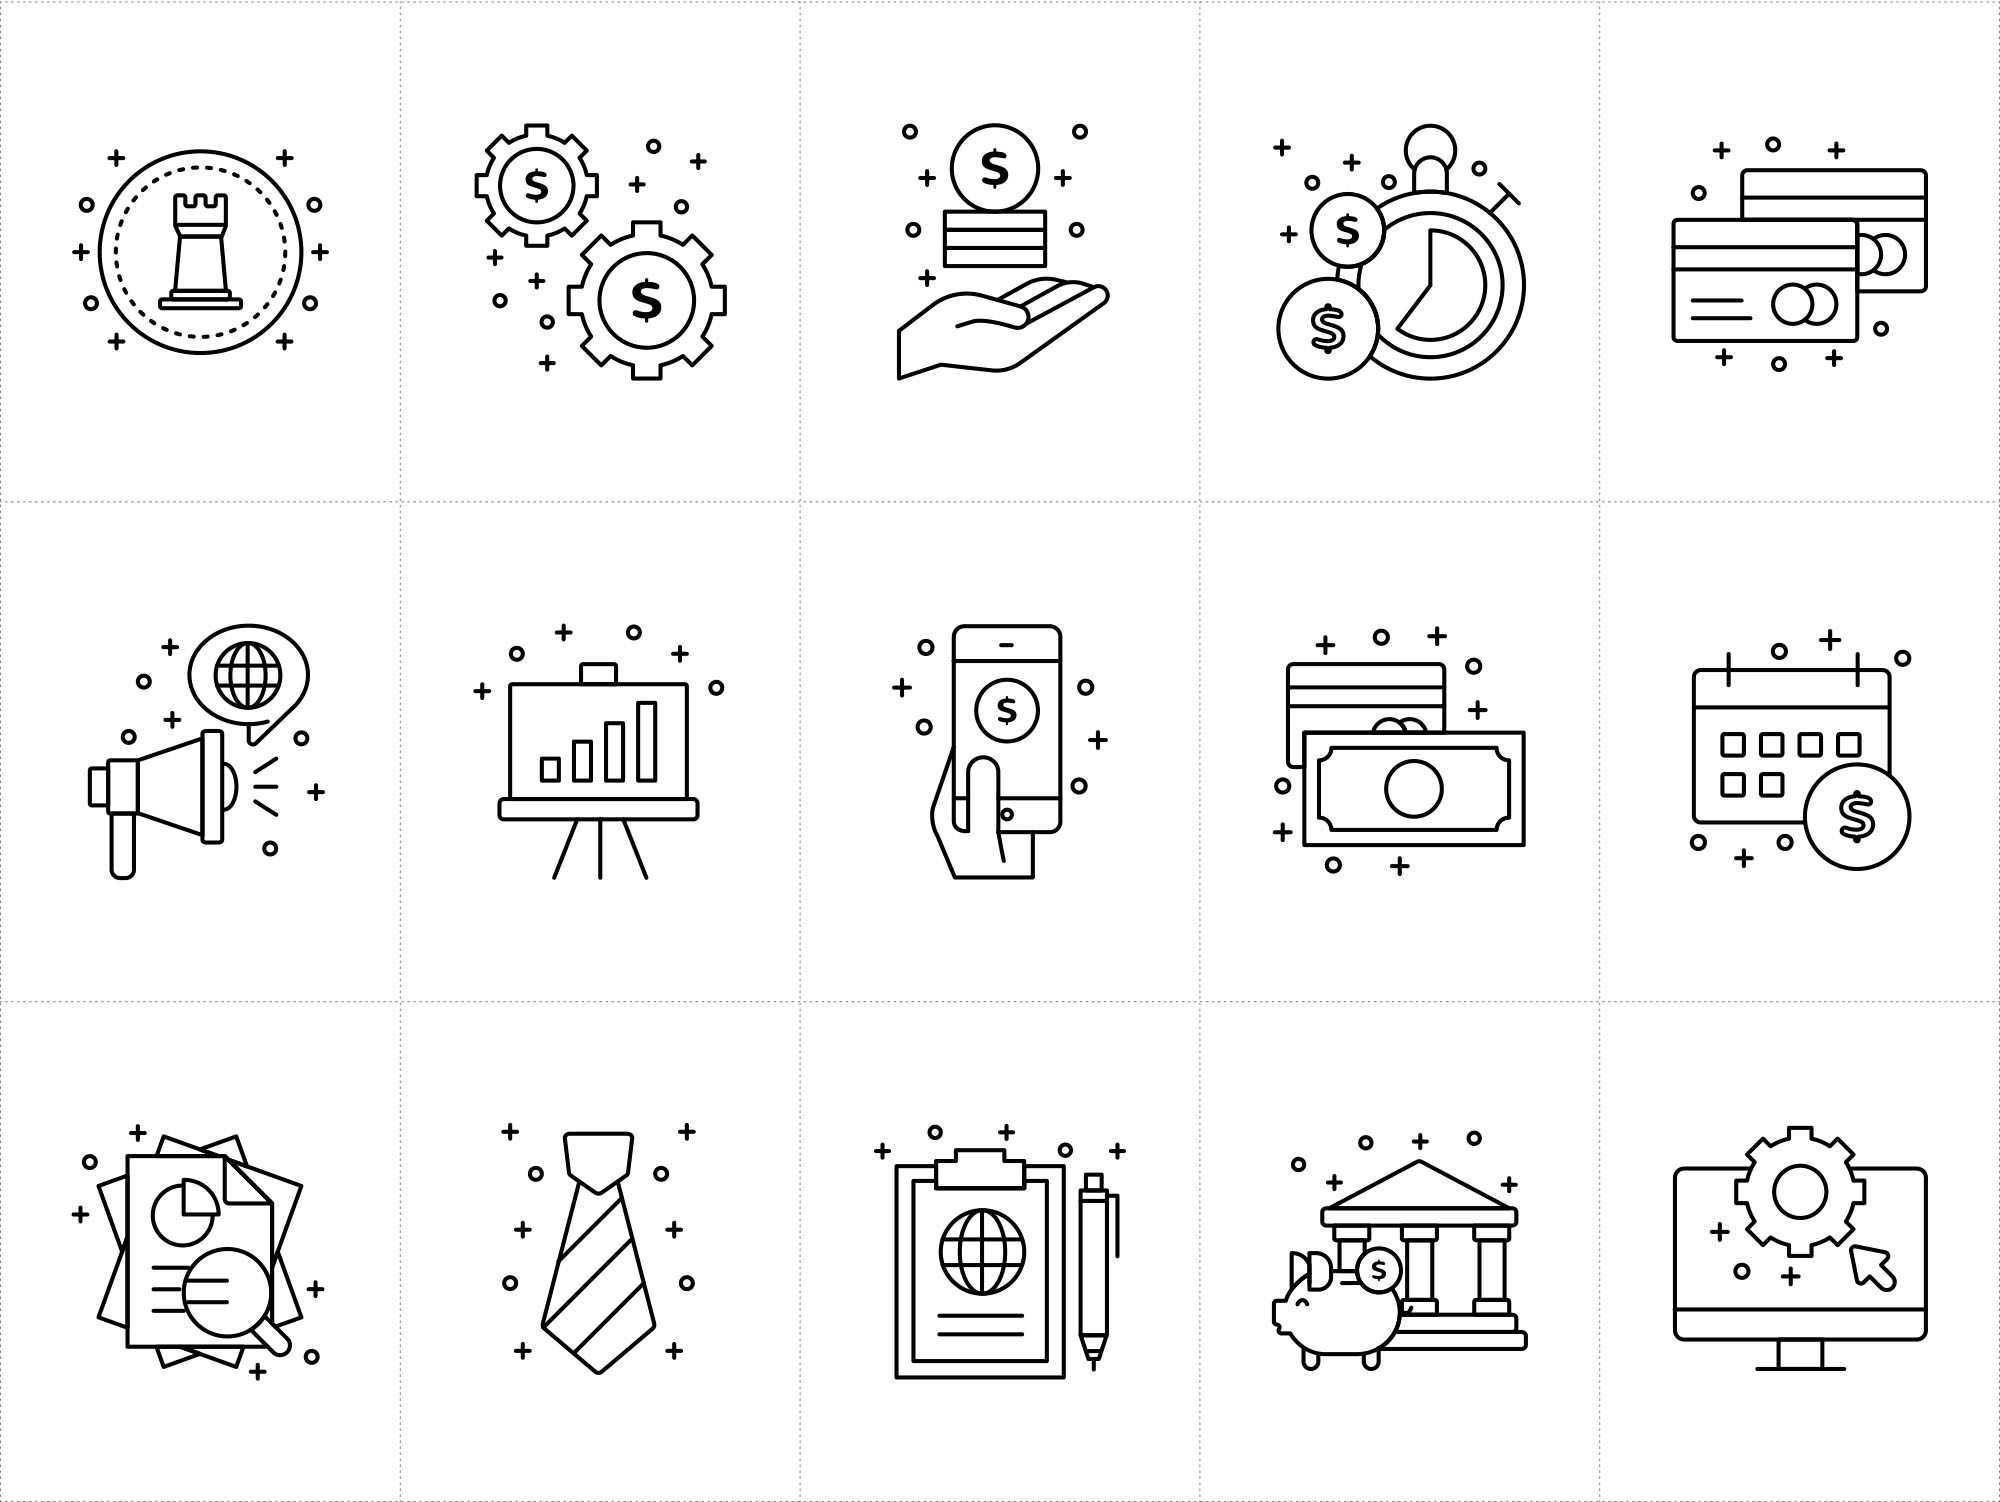 企业业务相关矢量图标素材 Corporate Business Vector Icons插图(1)